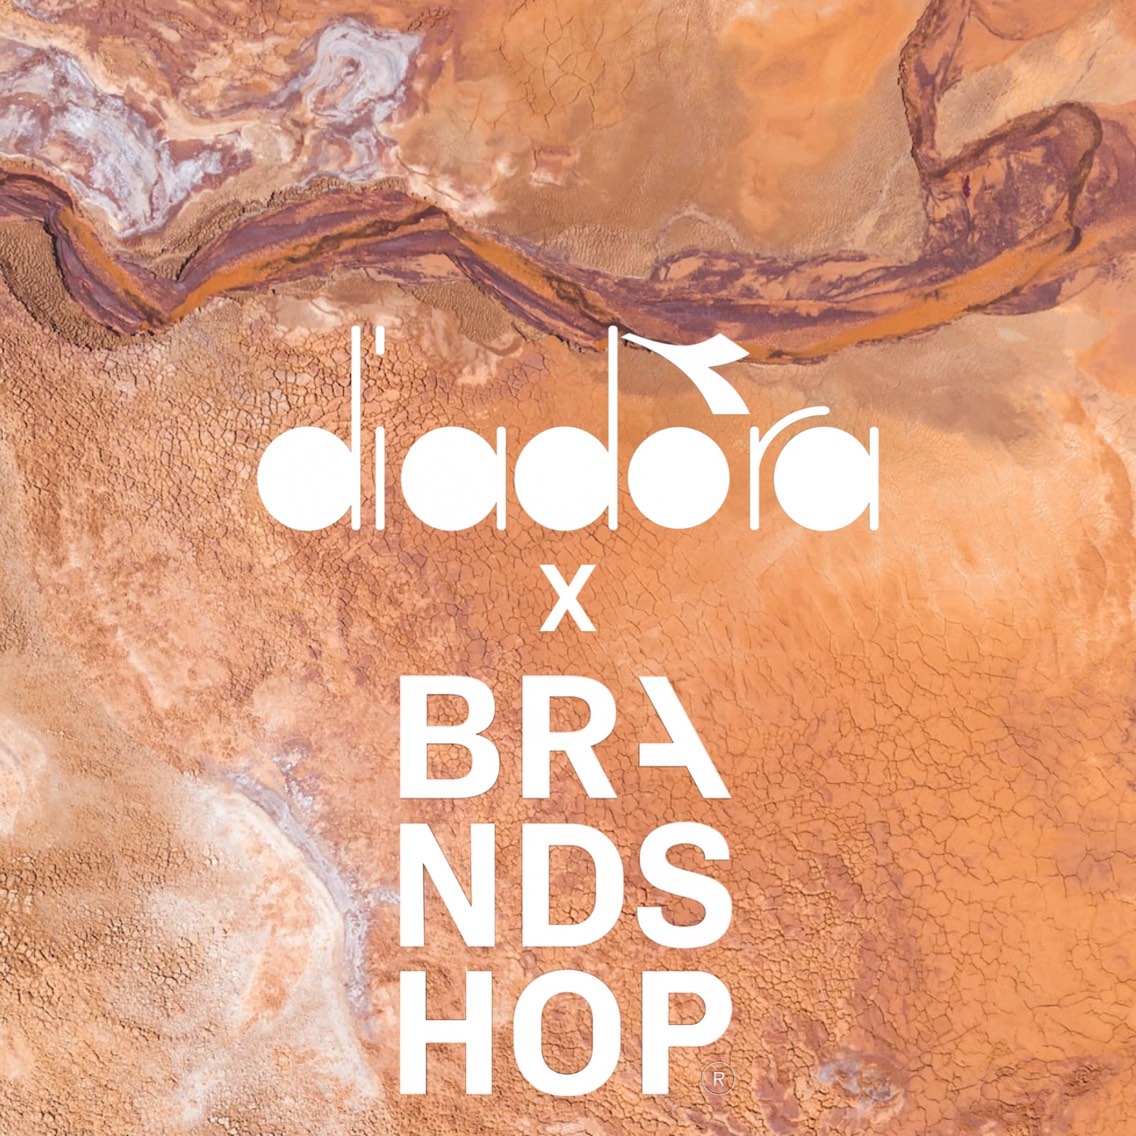 Diadora x Brandshop